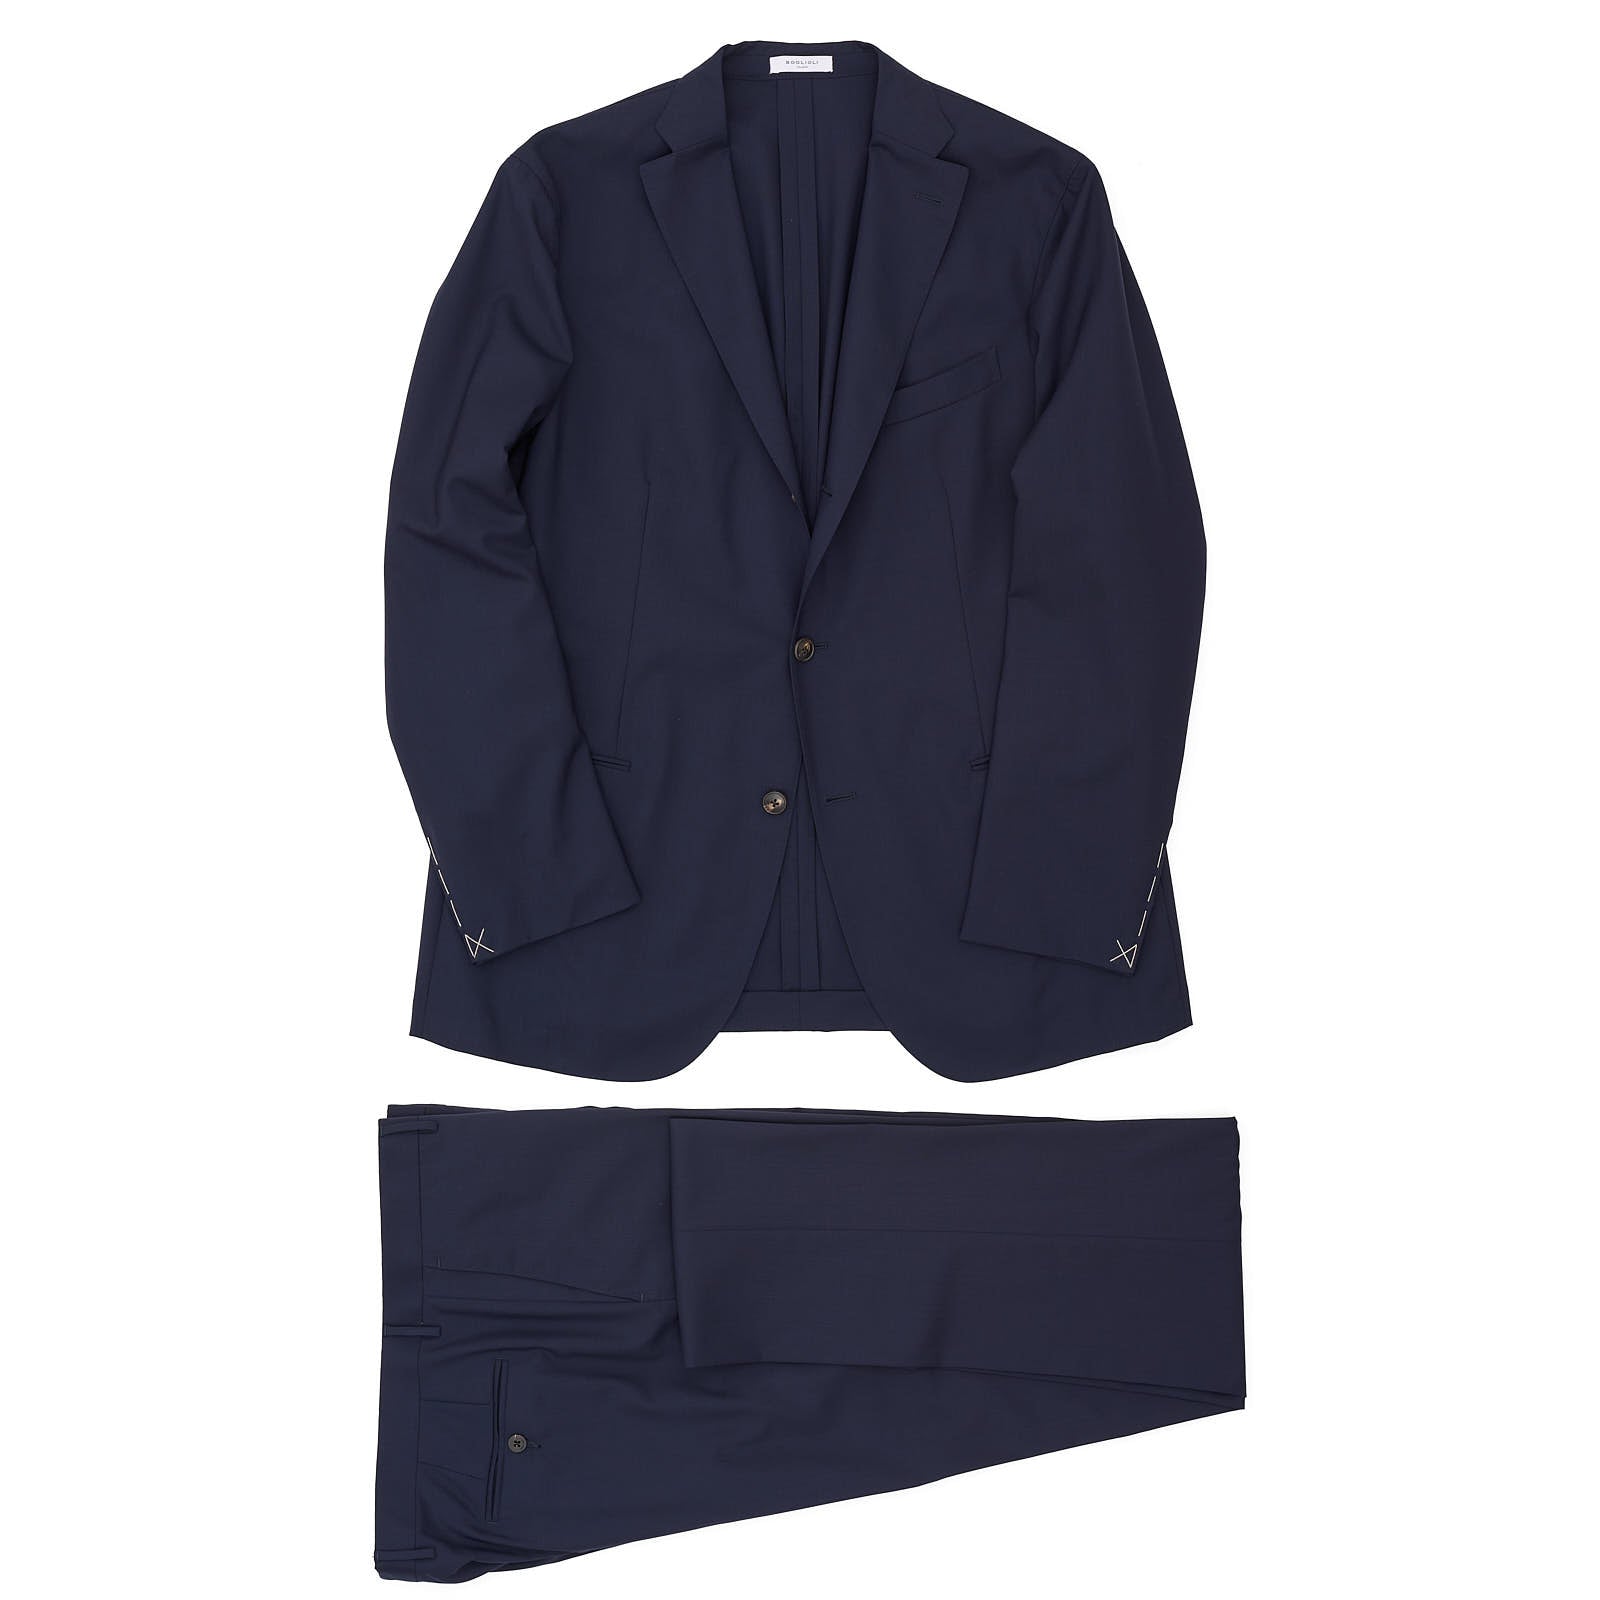 BOGLIOLI Milano "K. Jacket" Navy Blue Virgin Wool Unlined Suit EU 54 NEW US 44 Long Fit